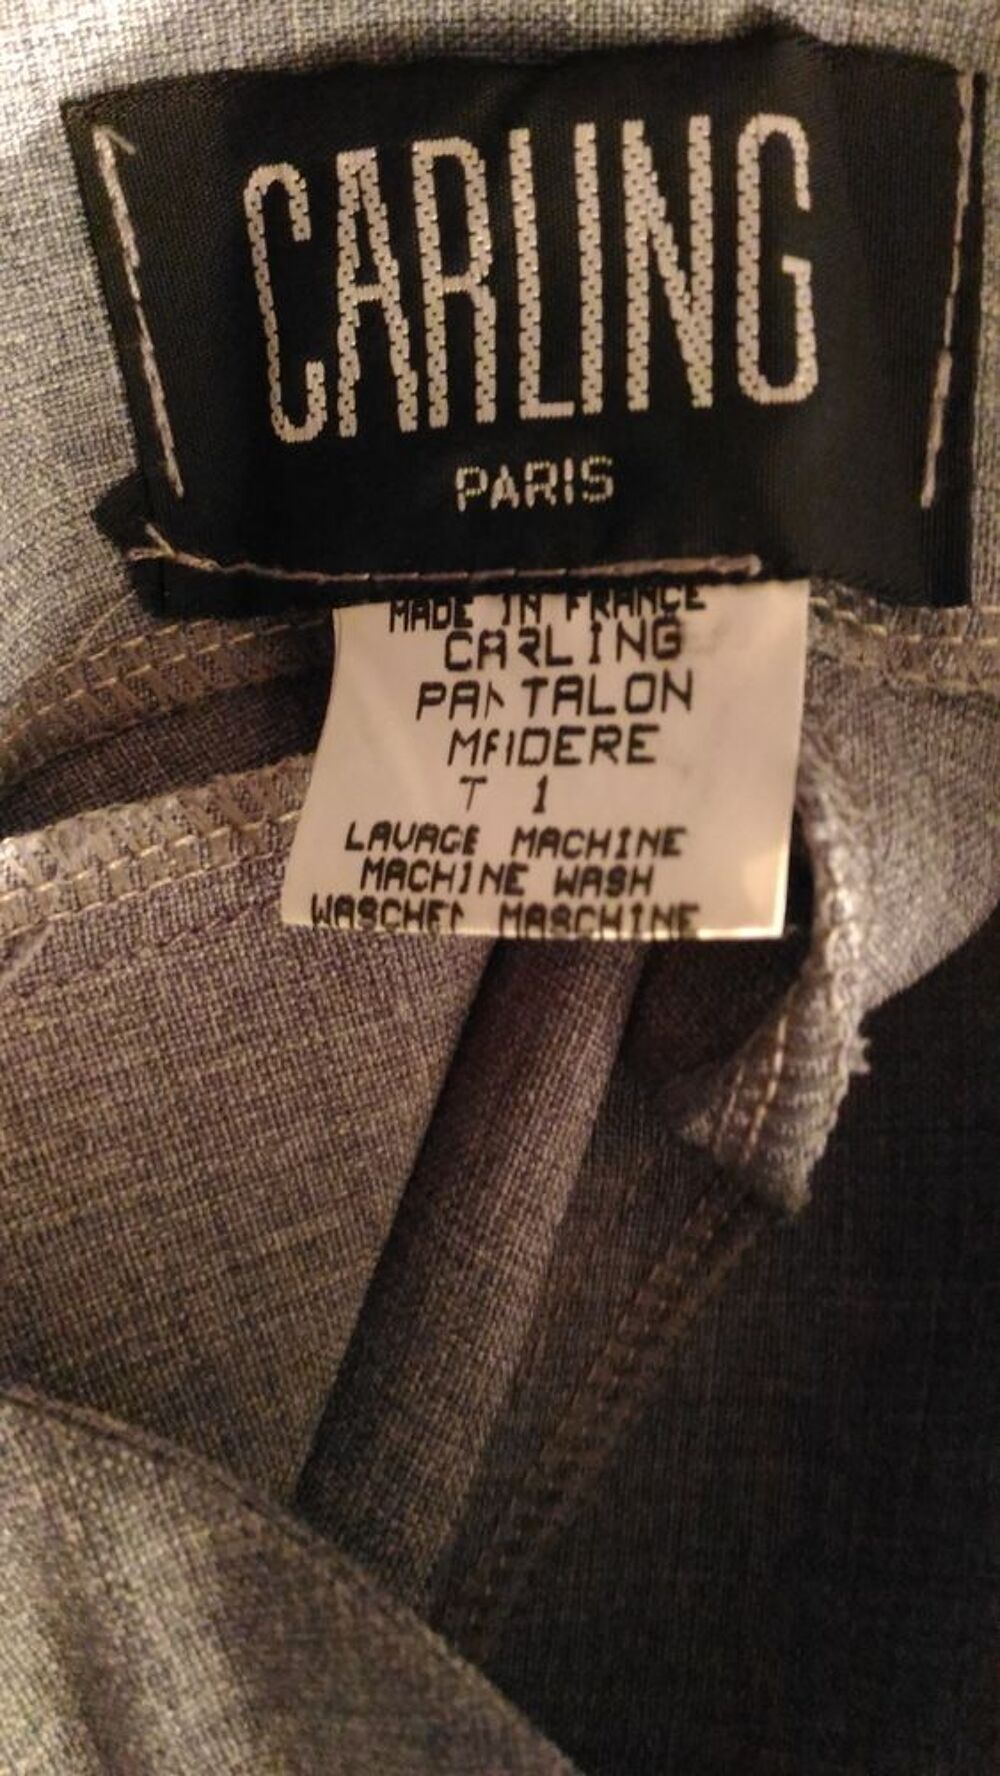 Pantalons CARLING gris Paris femme Vtements